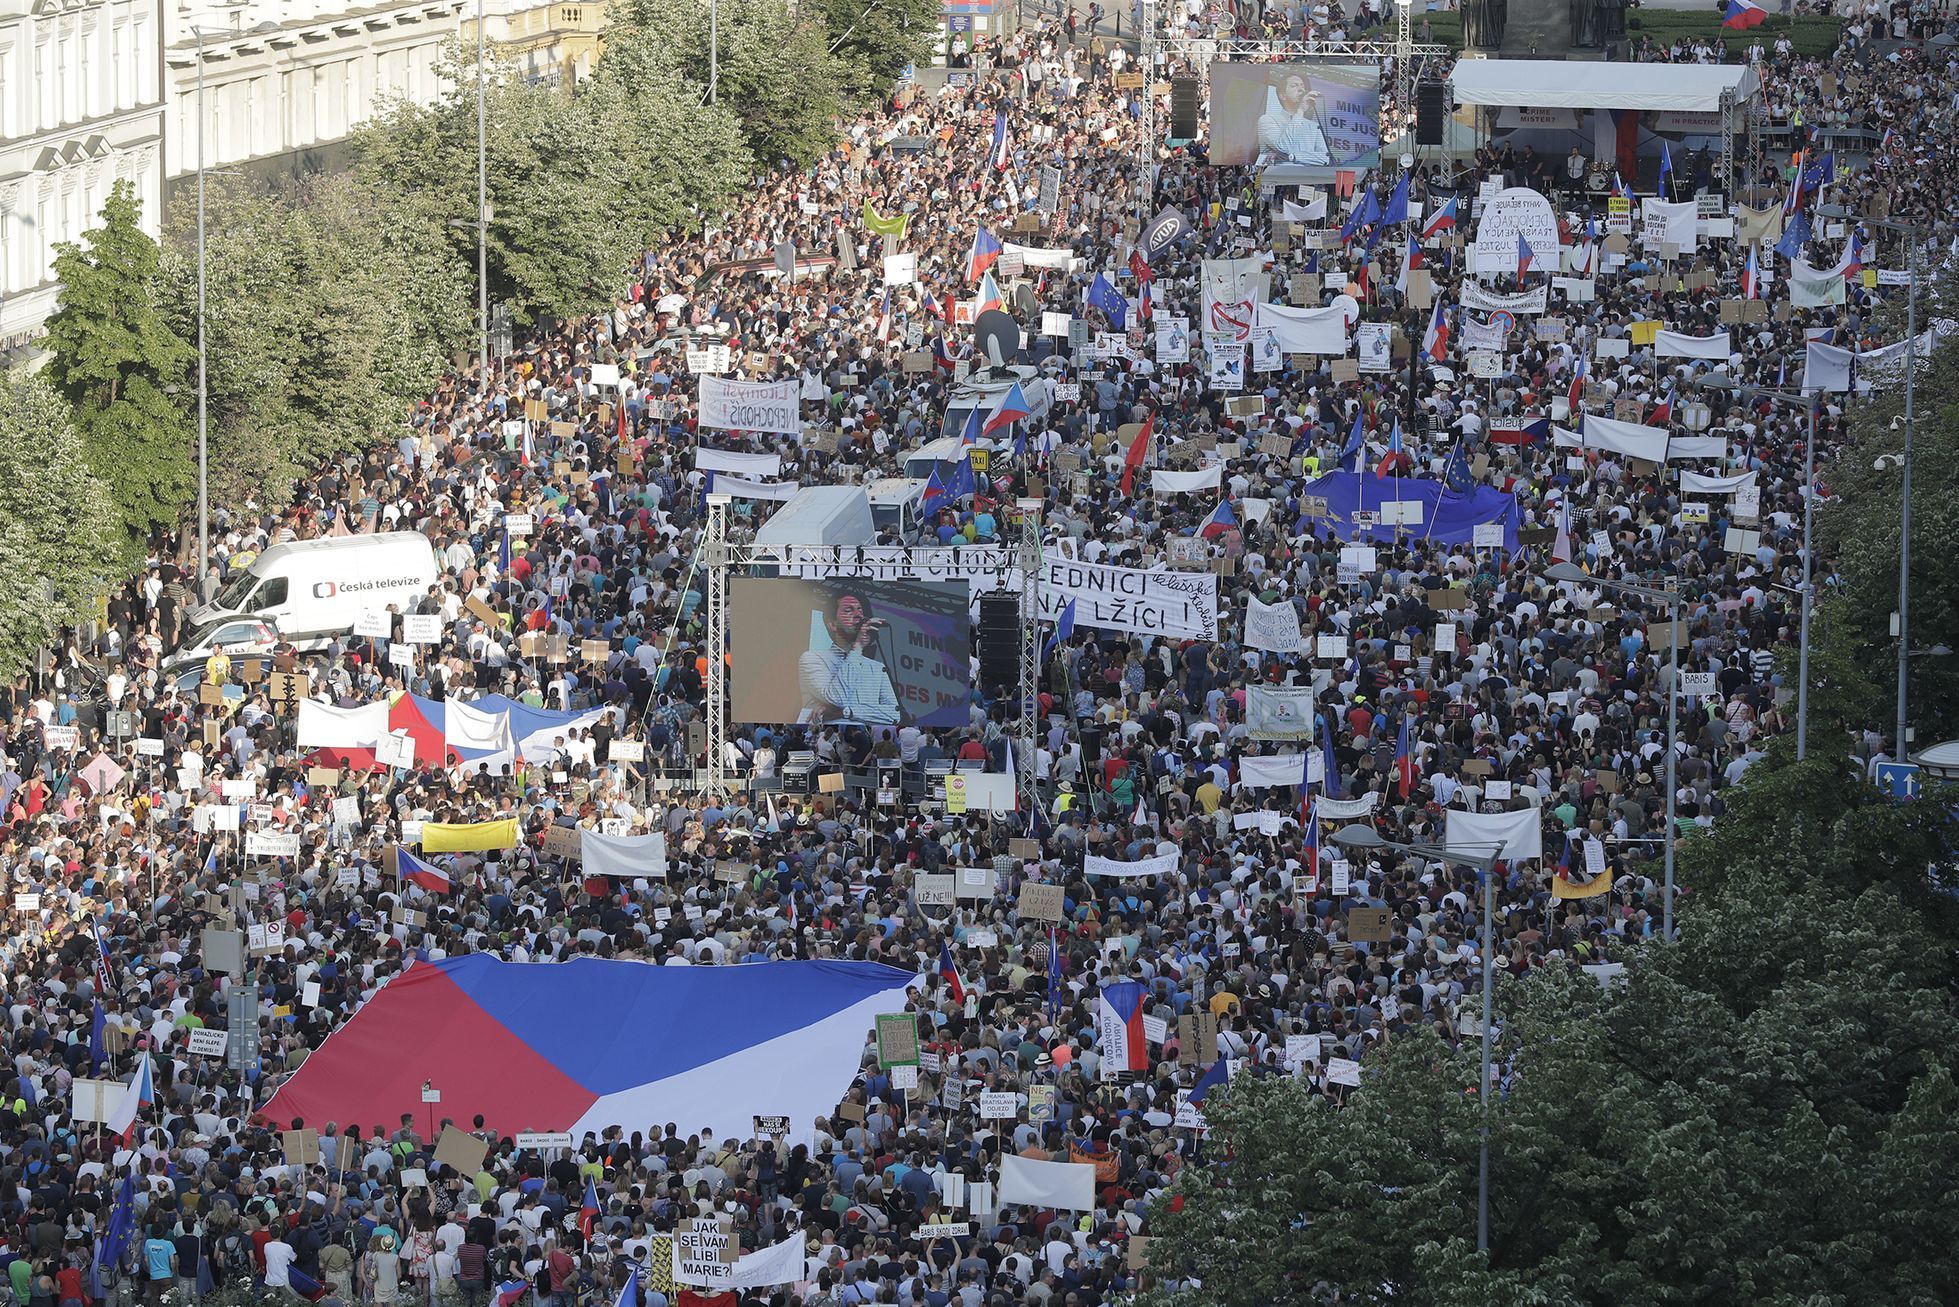 Foto / 4. 6 2019 / Demonstrace proti Benešové a Babišovi na Václavském náměstí / Milion chvilek pro demokracii / Lukáš Bíba